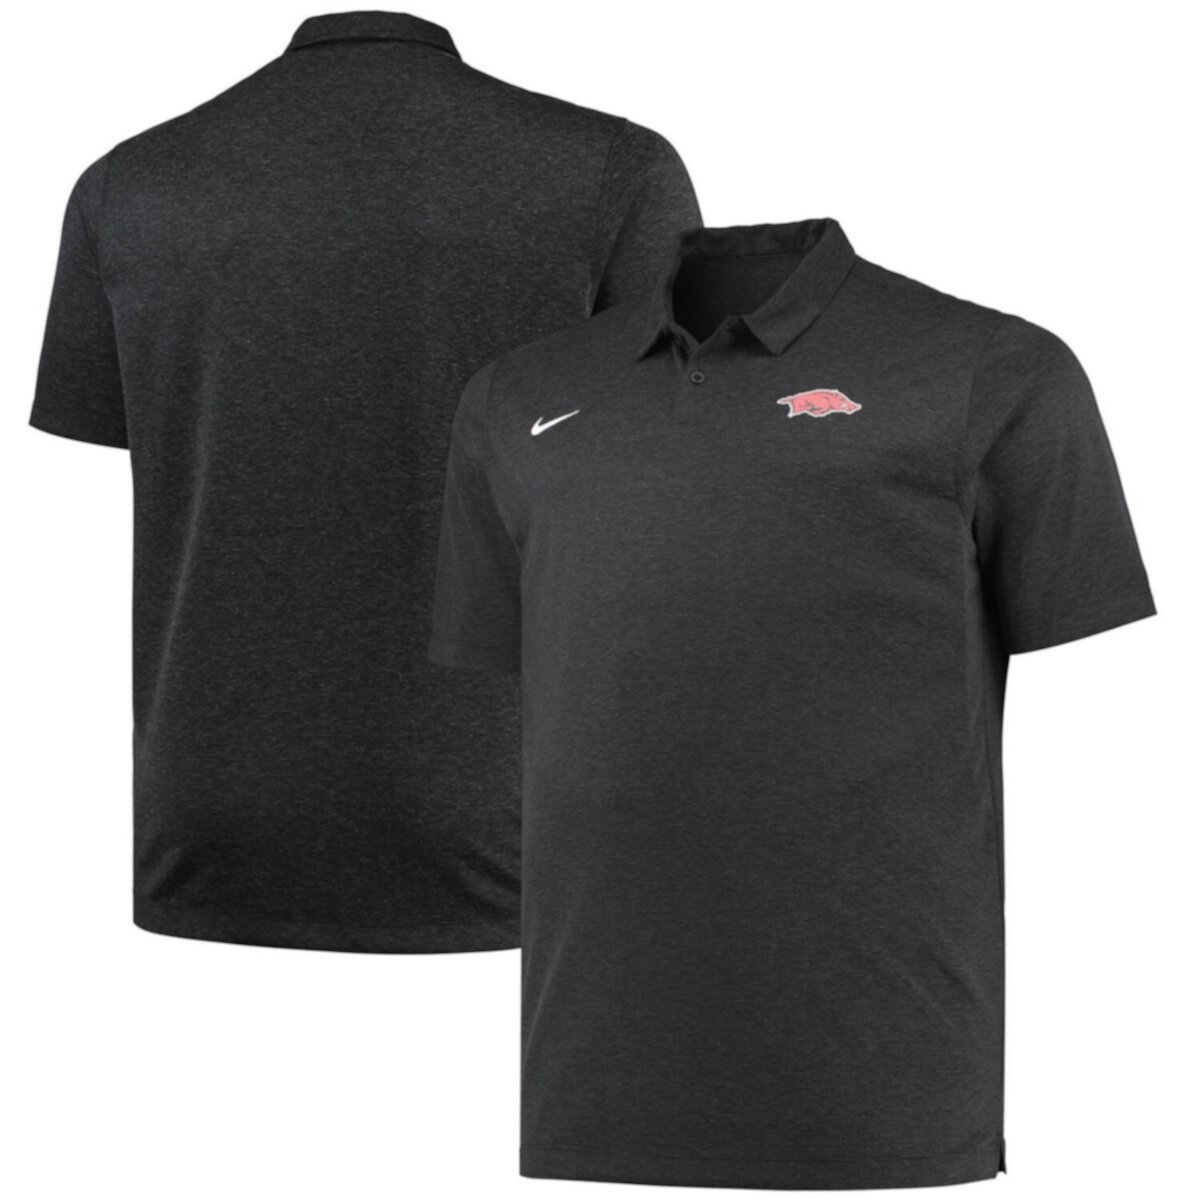 Мужская черная футболка-поло для высоких и больших выступлений Nike Arkansas Razorbacks черного цвета с обсыпкой Nitro USA